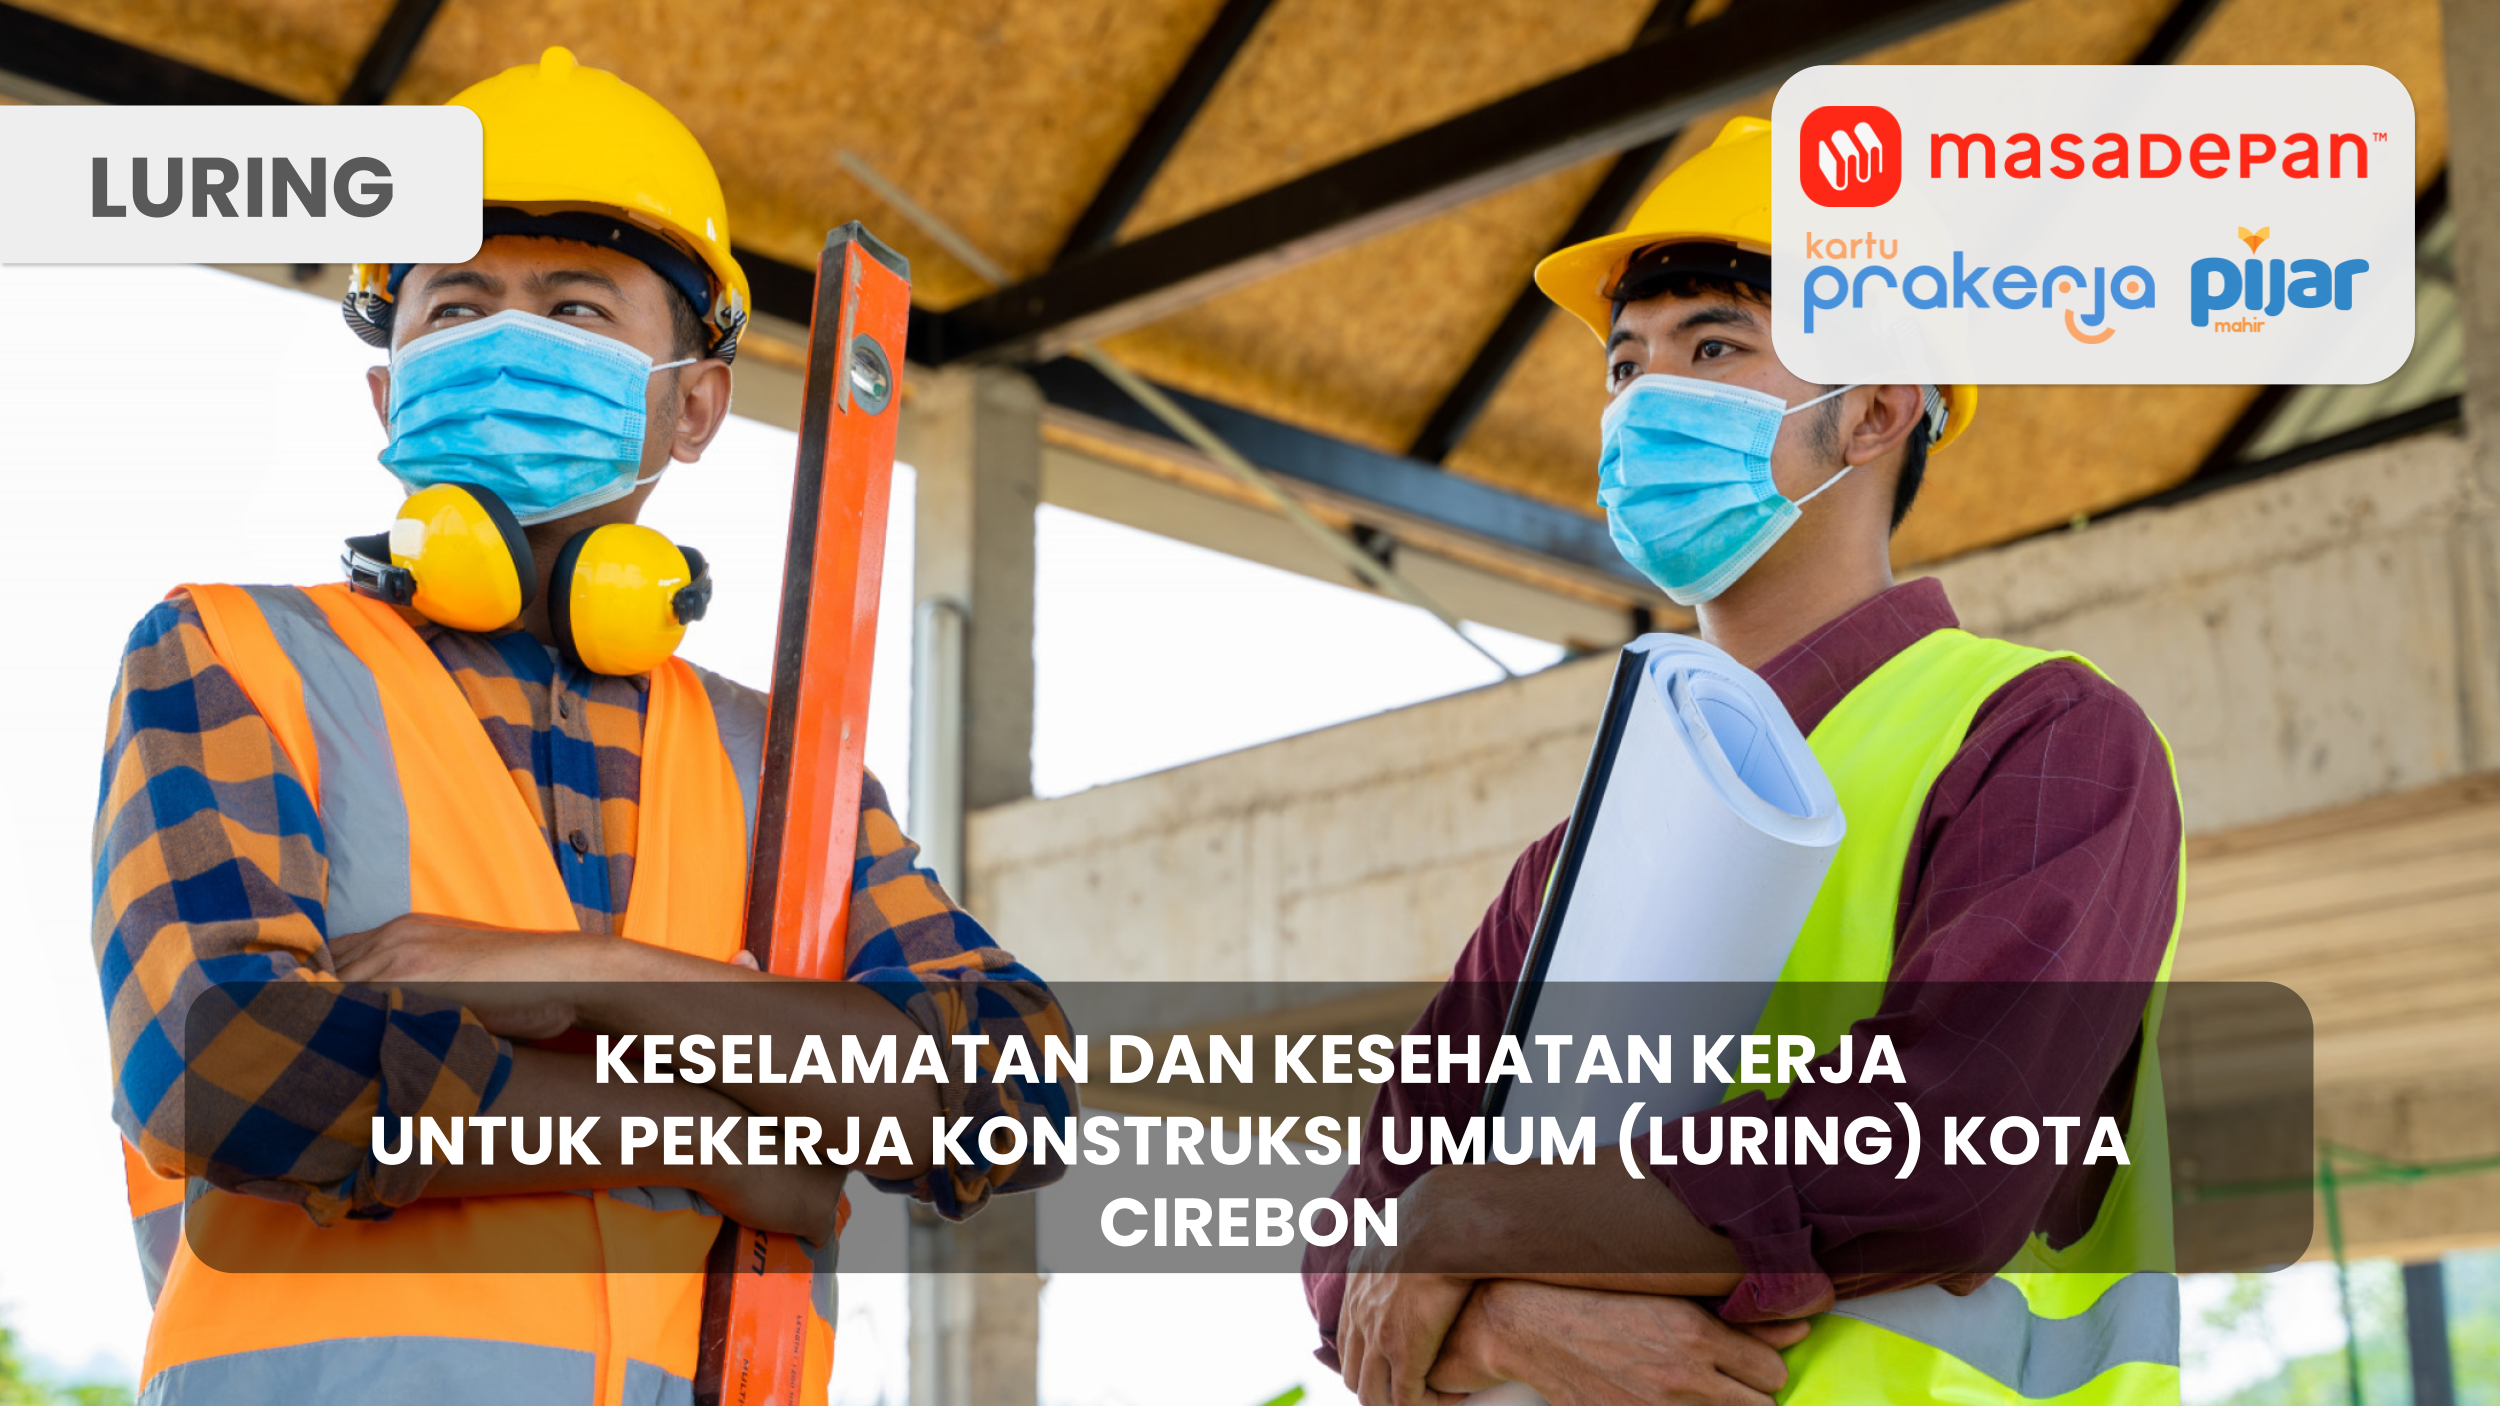 Keselamatan dan Kesehatan Untuk Pekerja Konstruksi Umum (Luring) Kota Cirebon